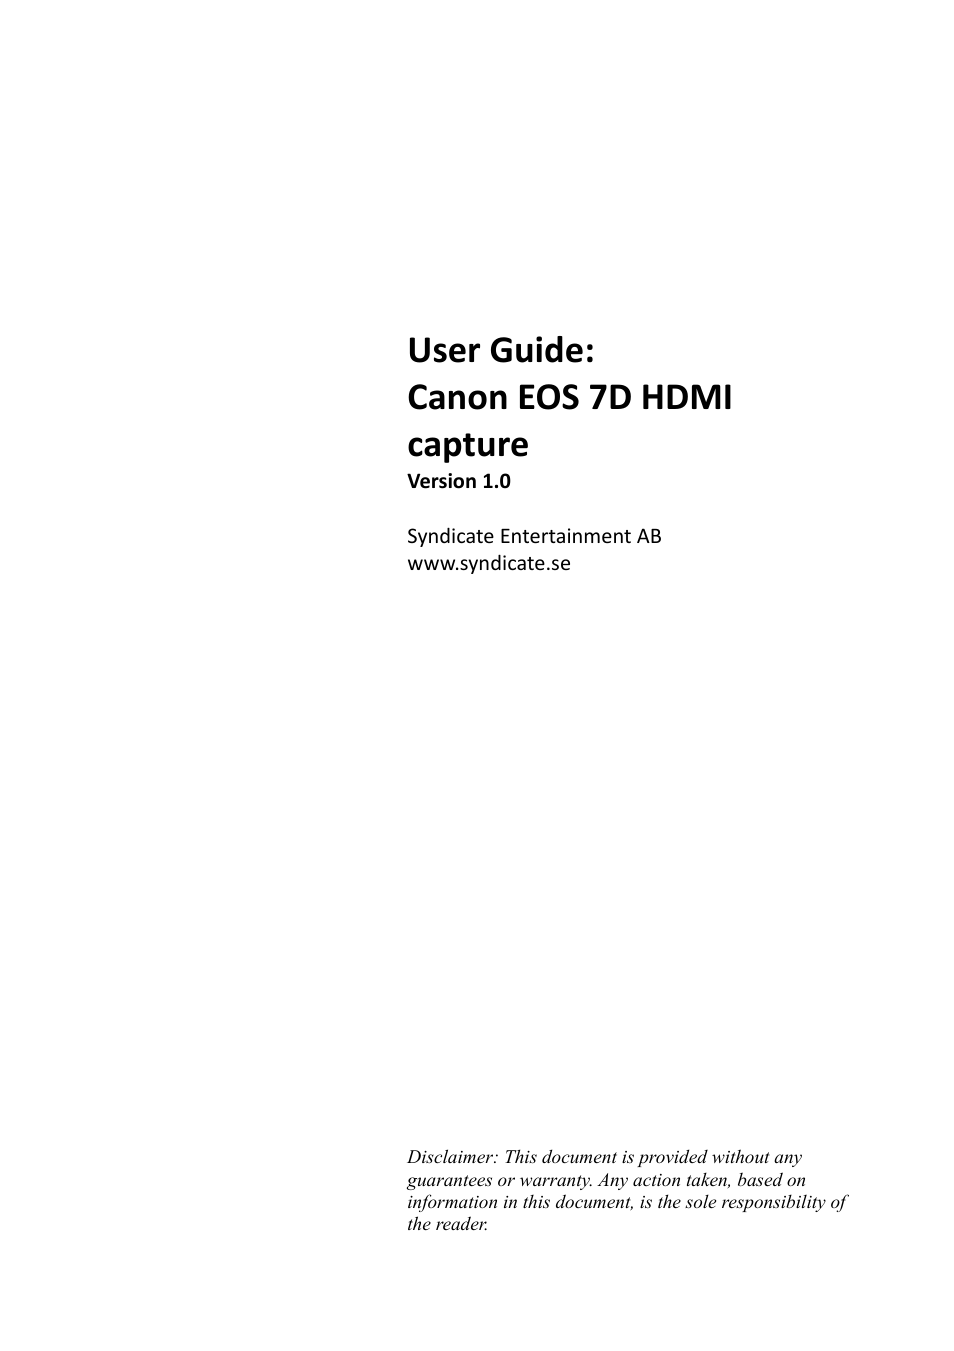 EOS 7D HDMI